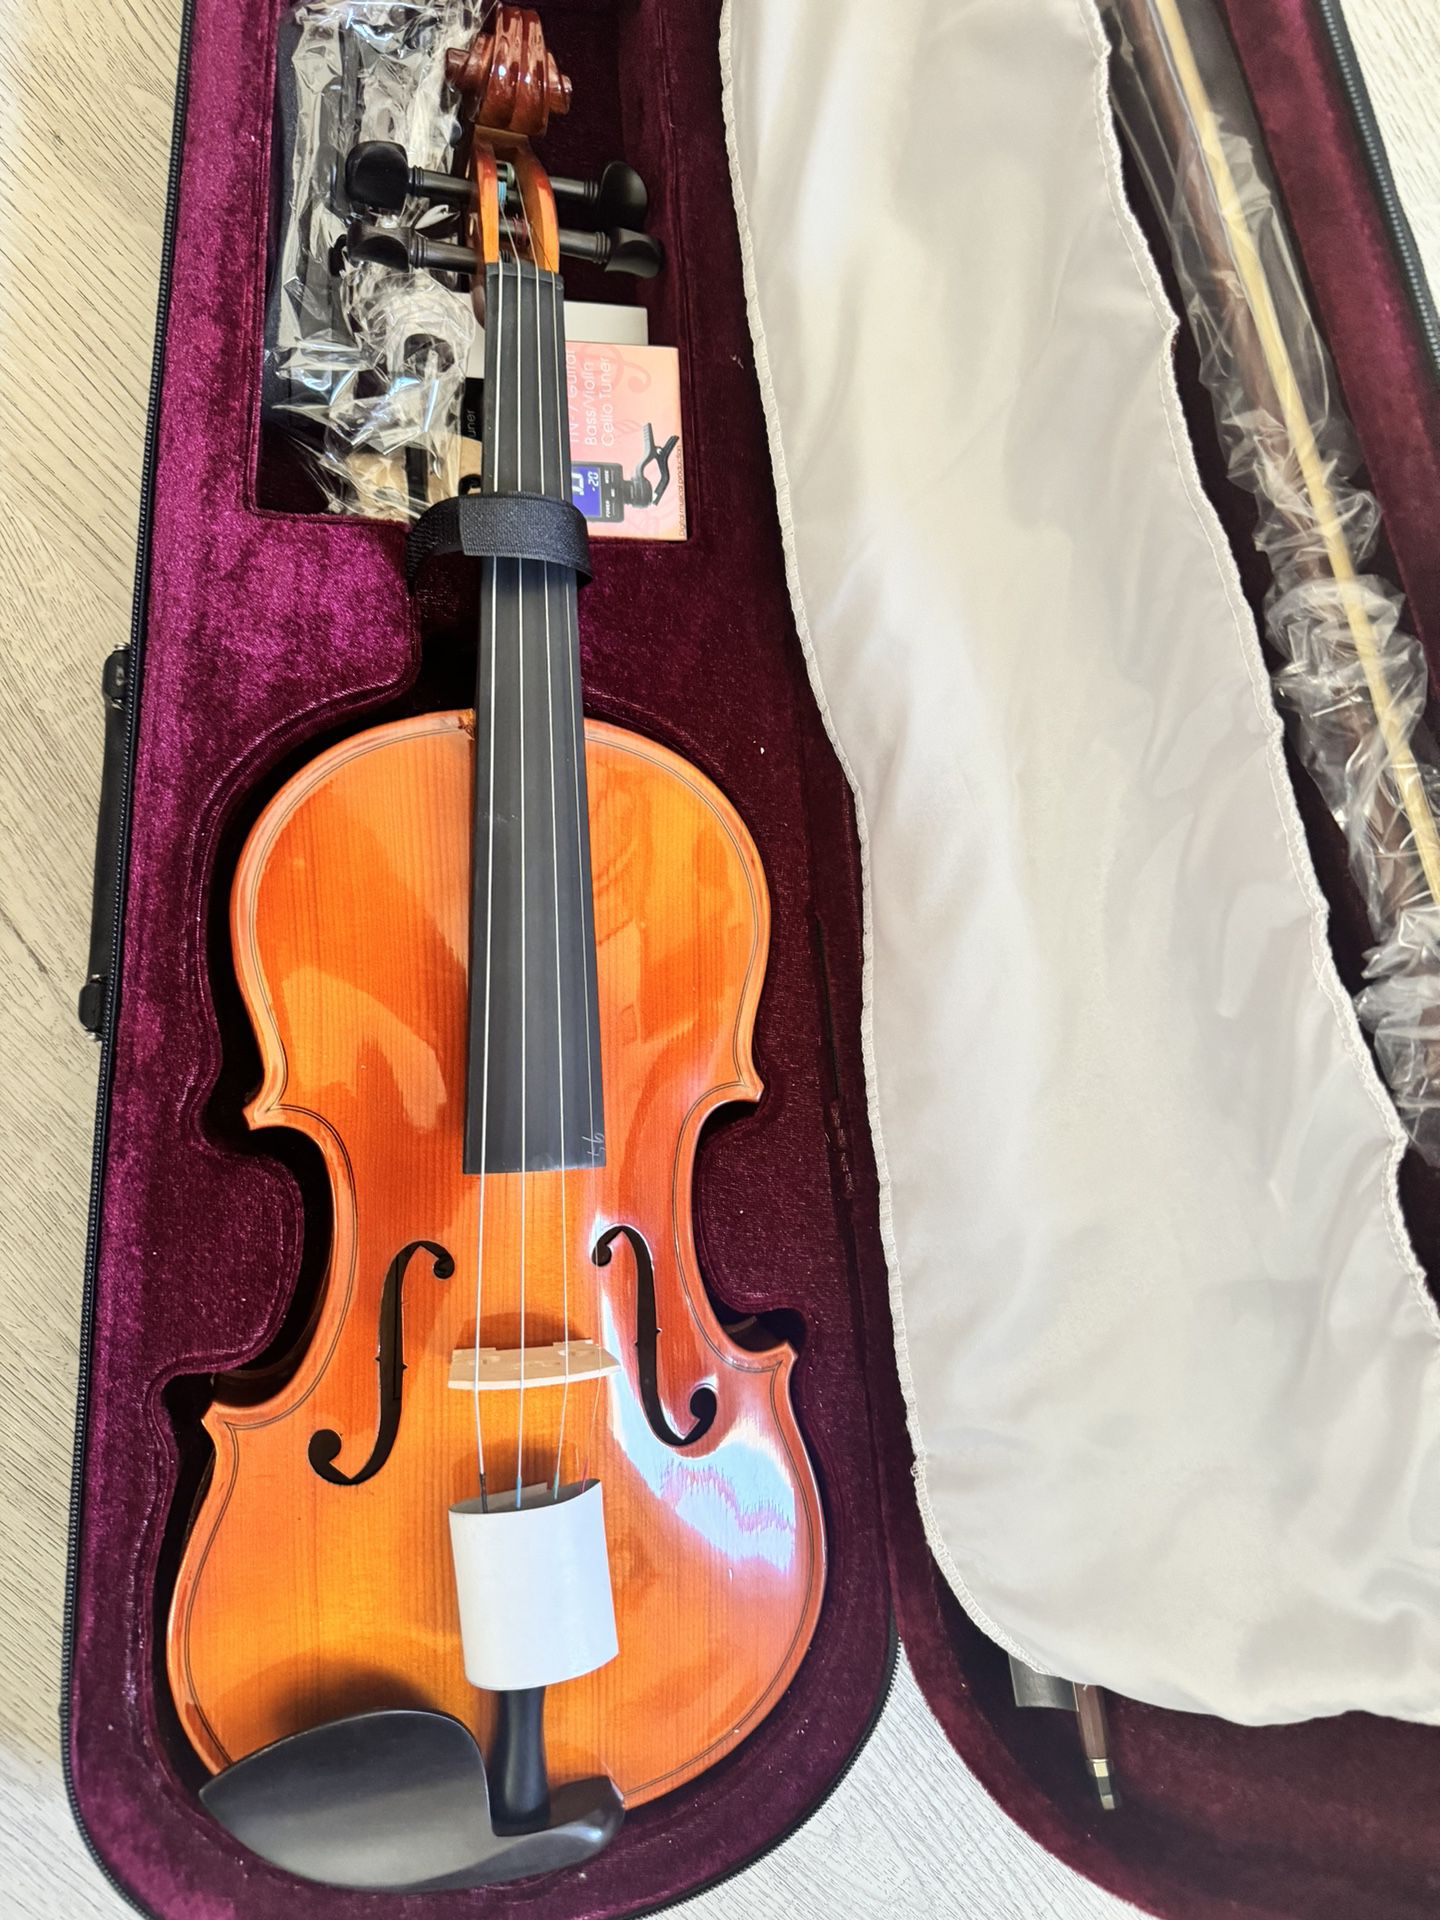 Cecilio violin 